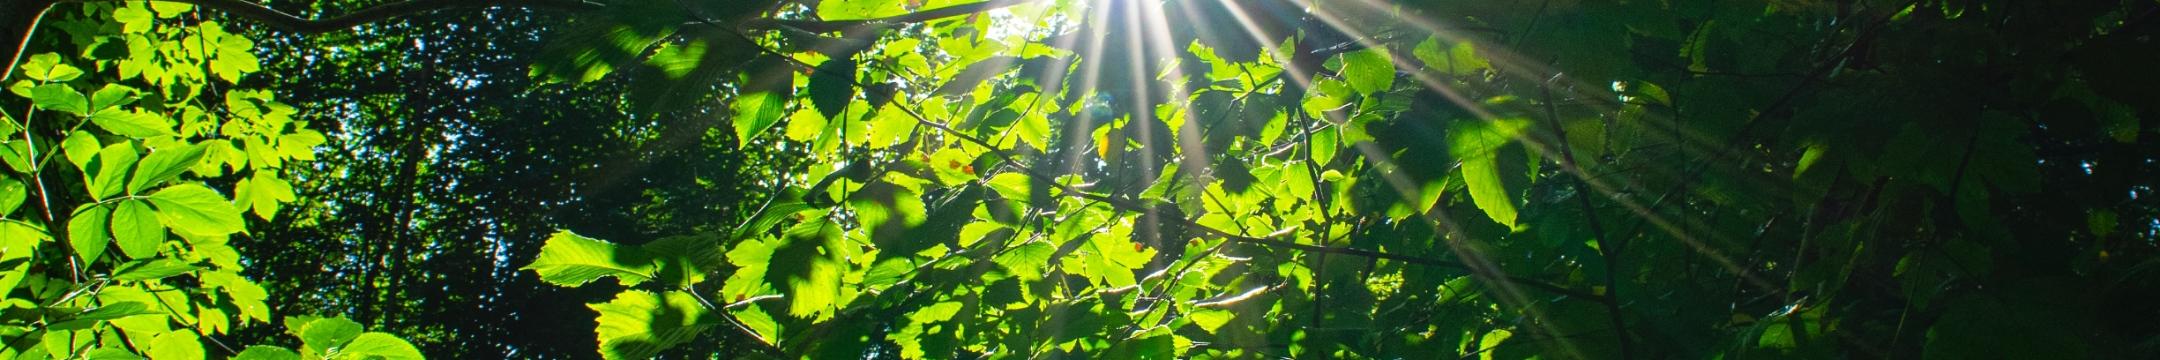 Blick in einen Baum mit hellgrünen Blättern. Die Sonne strahlt dazwischen.